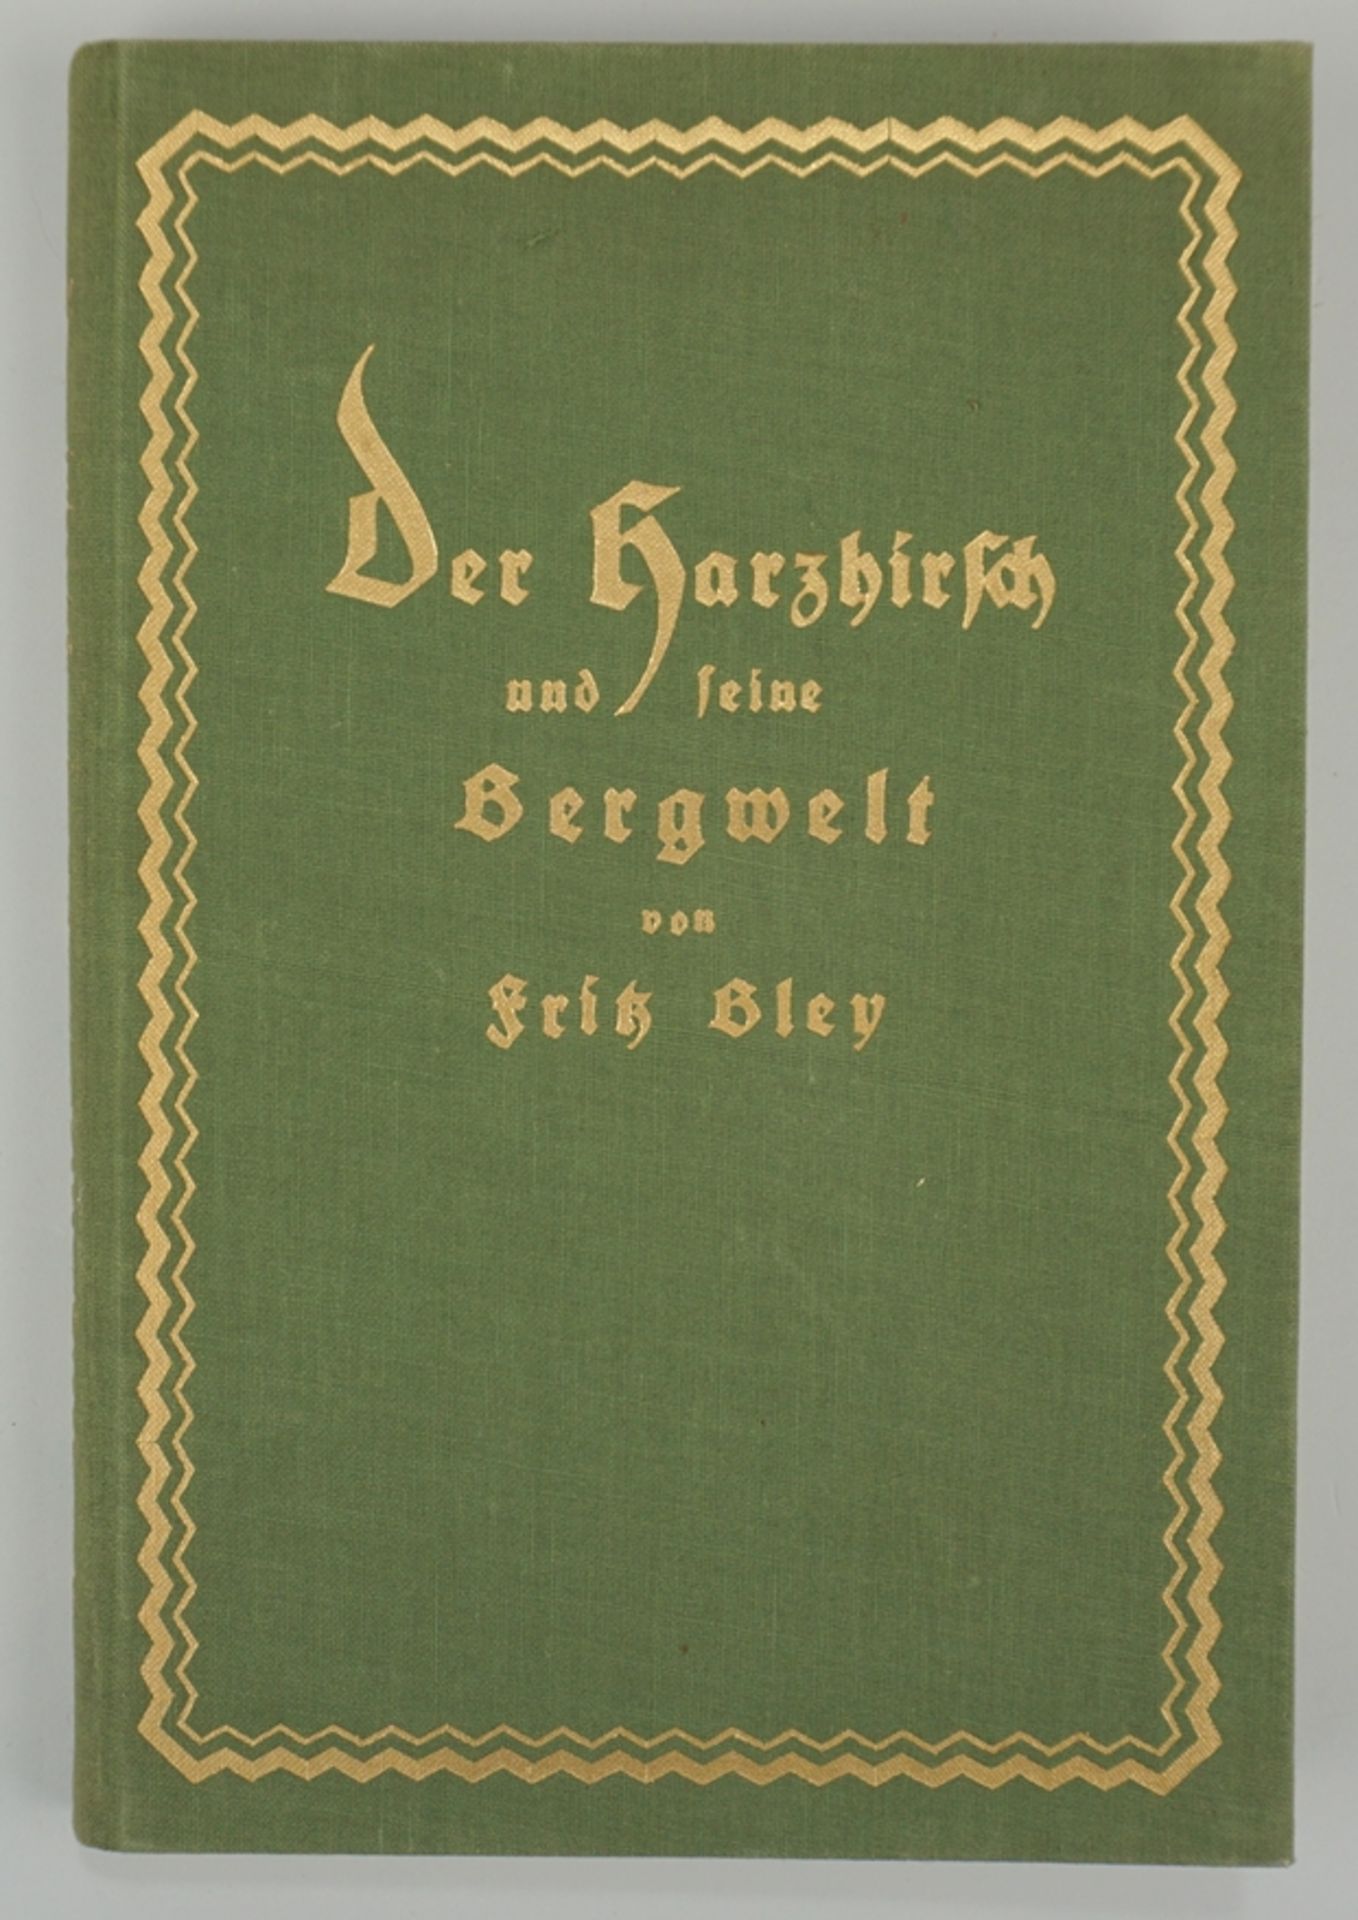 Der Harzhirsch und seine Bergwelt, Fritz Bley, 1927